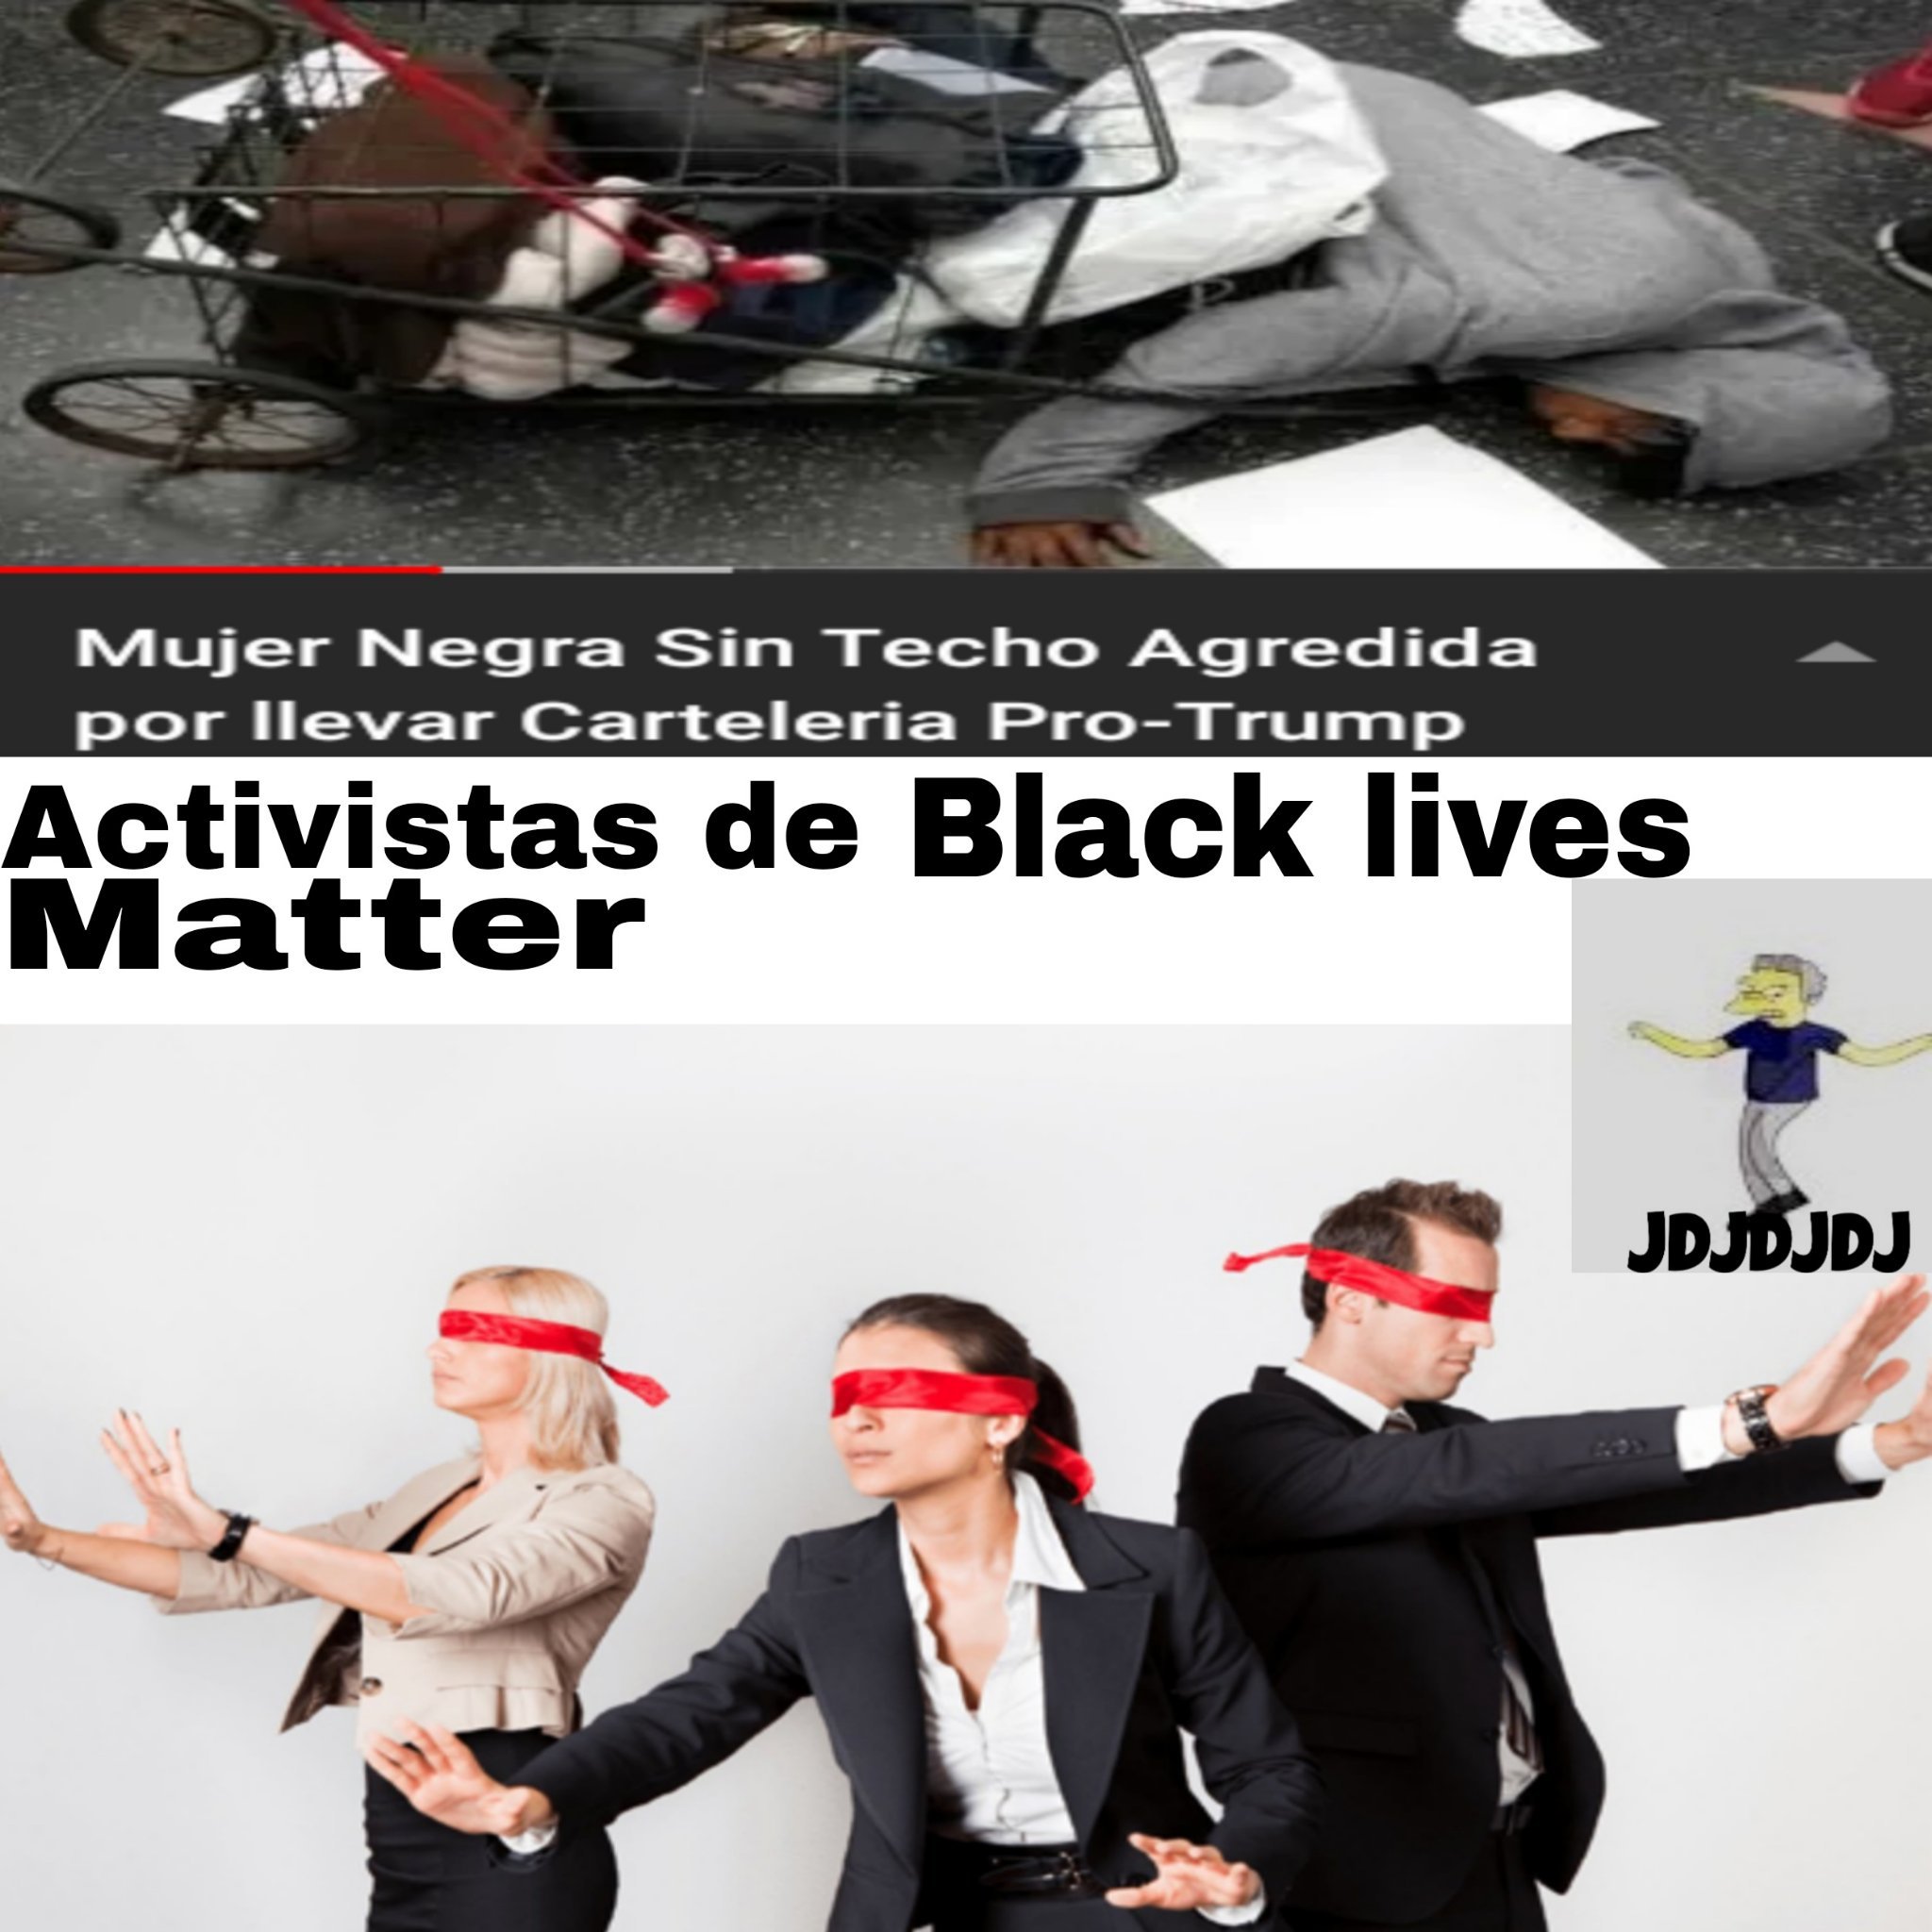 Los de black lives matter son comunistas y ladrones - meme